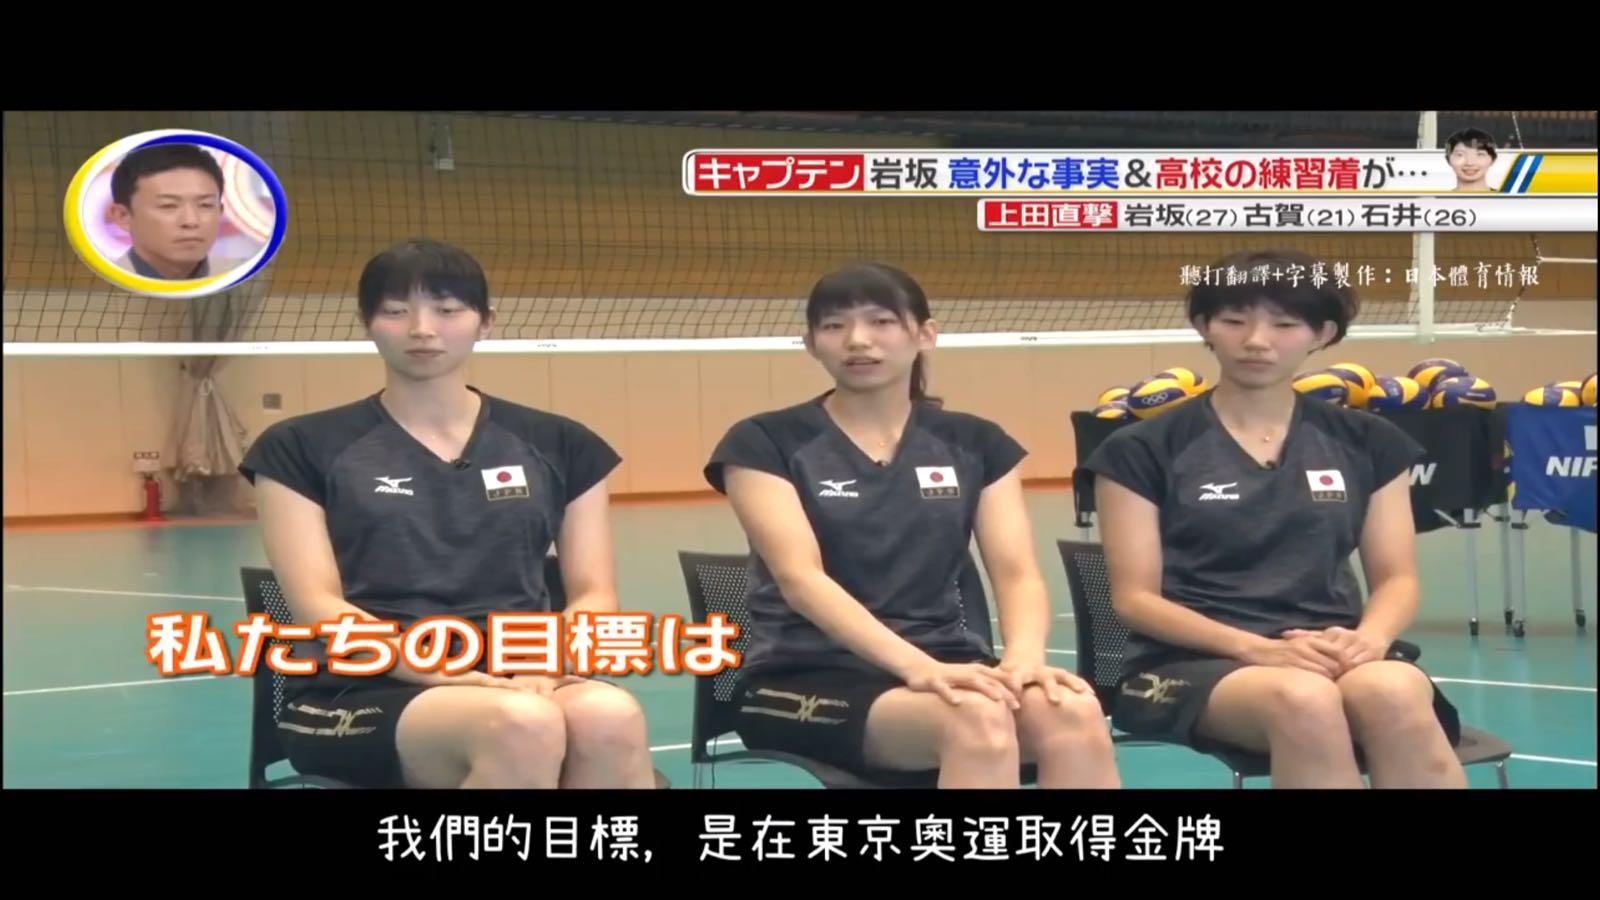 日本女排三队员做客访谈节目 直言目标是东